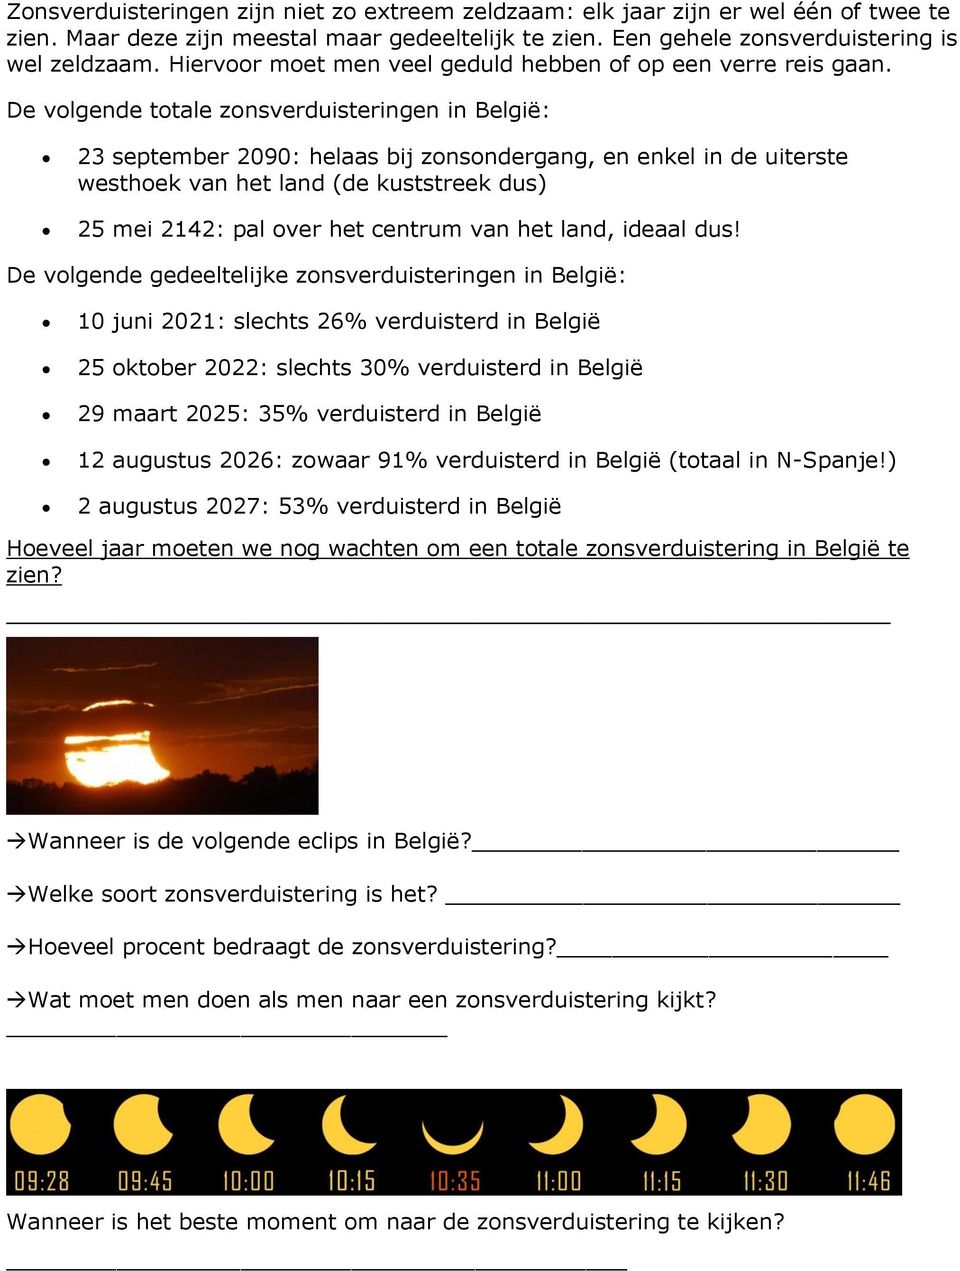 De volgende totale zonsverduisteringen in België: 23 september 2090: helaas bij zonsondergang, en enkel in de uiterste westhoek van het land (de kuststreek dus) 25 mei 2142: pal over het centrum van